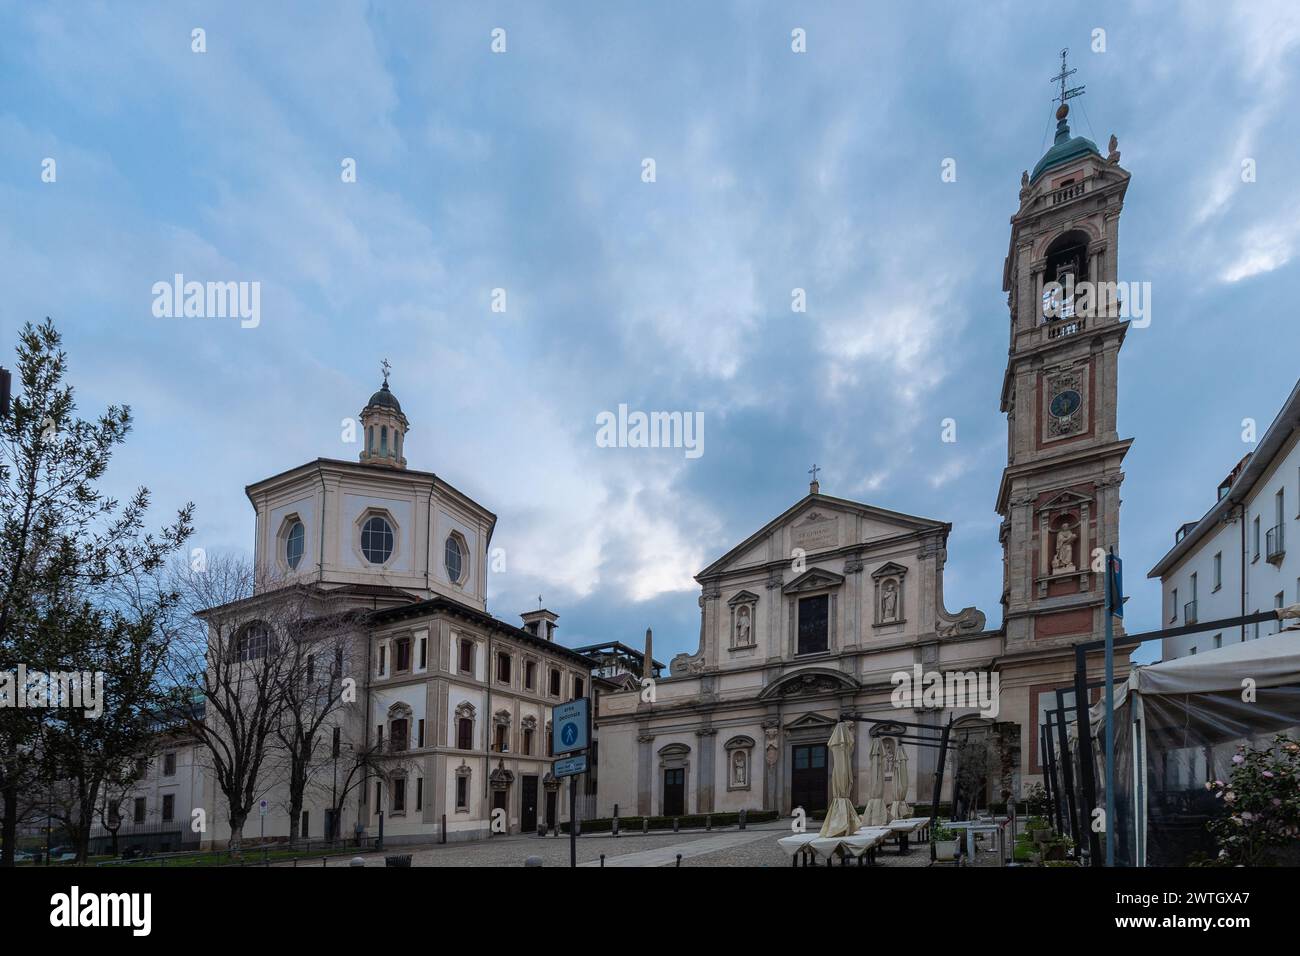 Die Basilica di Santo Stefano Maggiore ist eine Kirche in Mailand. Sie wurde im 5. Jahrhundert gegründet. Ursprünglich beiden Heiligen Zechariah an gewidmet Stockfoto